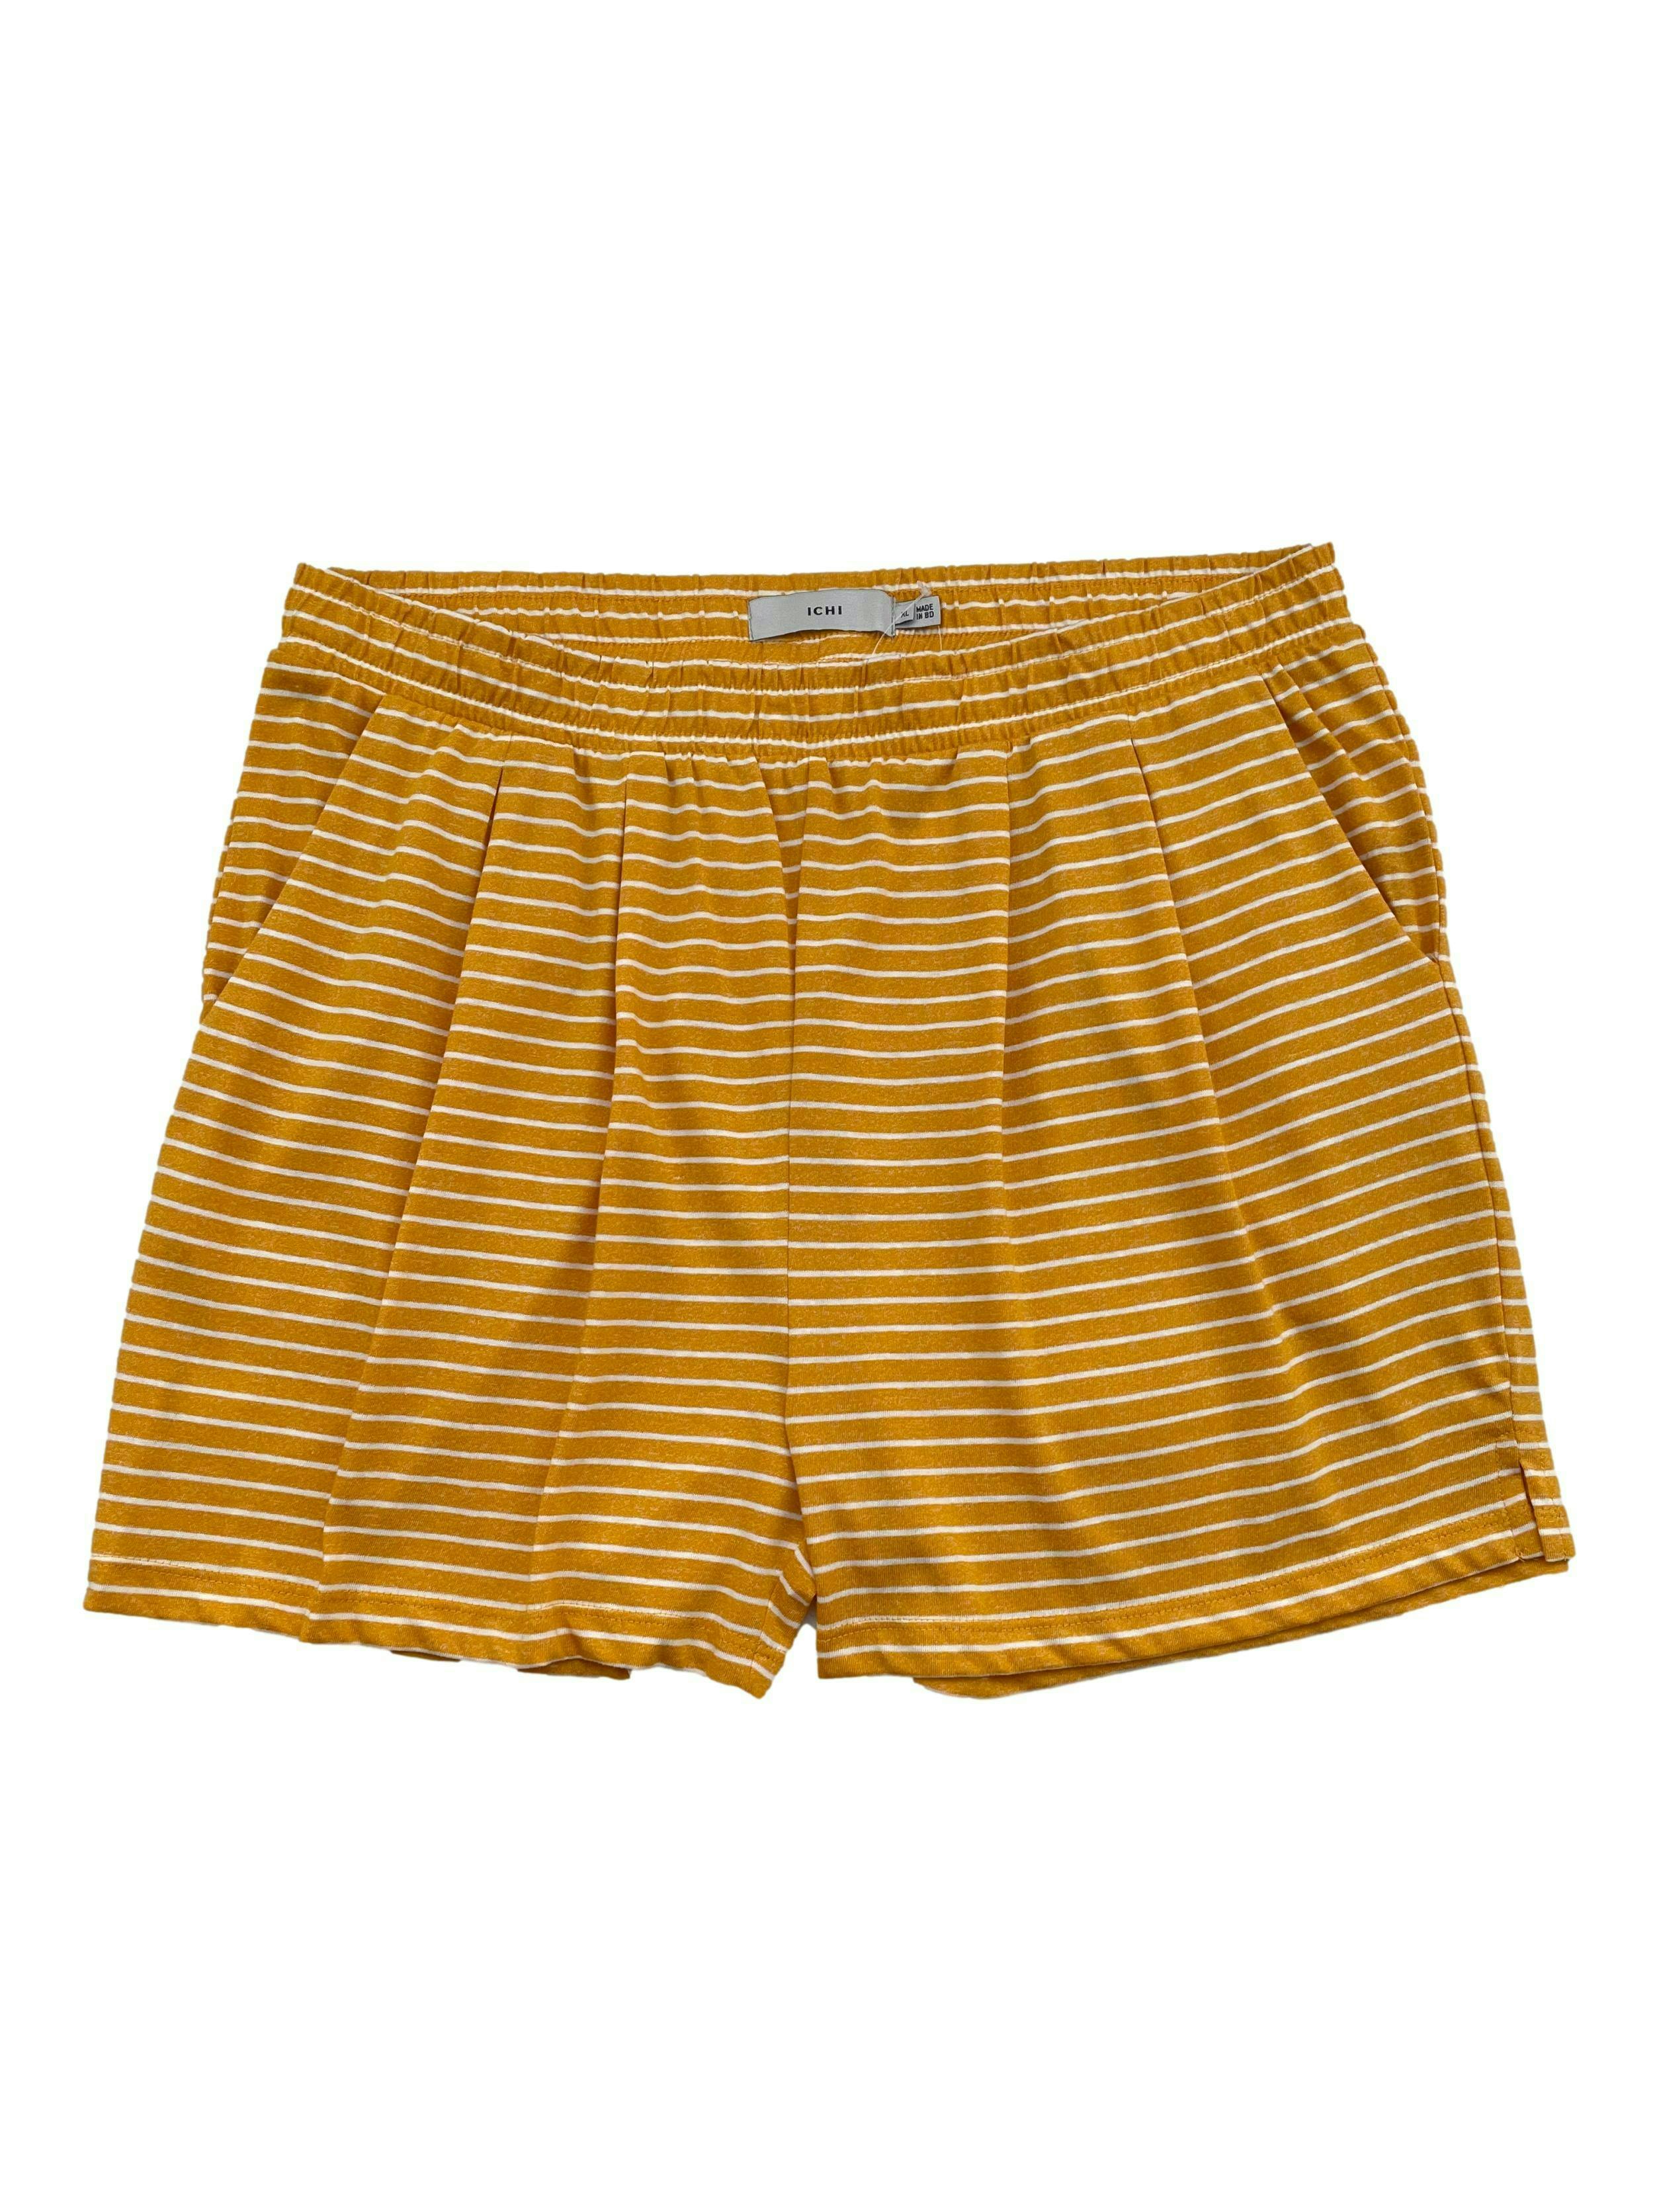 Short Ichi amarillos con líneas blancas, mezcla de algodón, con bolsillos laterales. Cintura 88cm sin estirar Largo 40cm